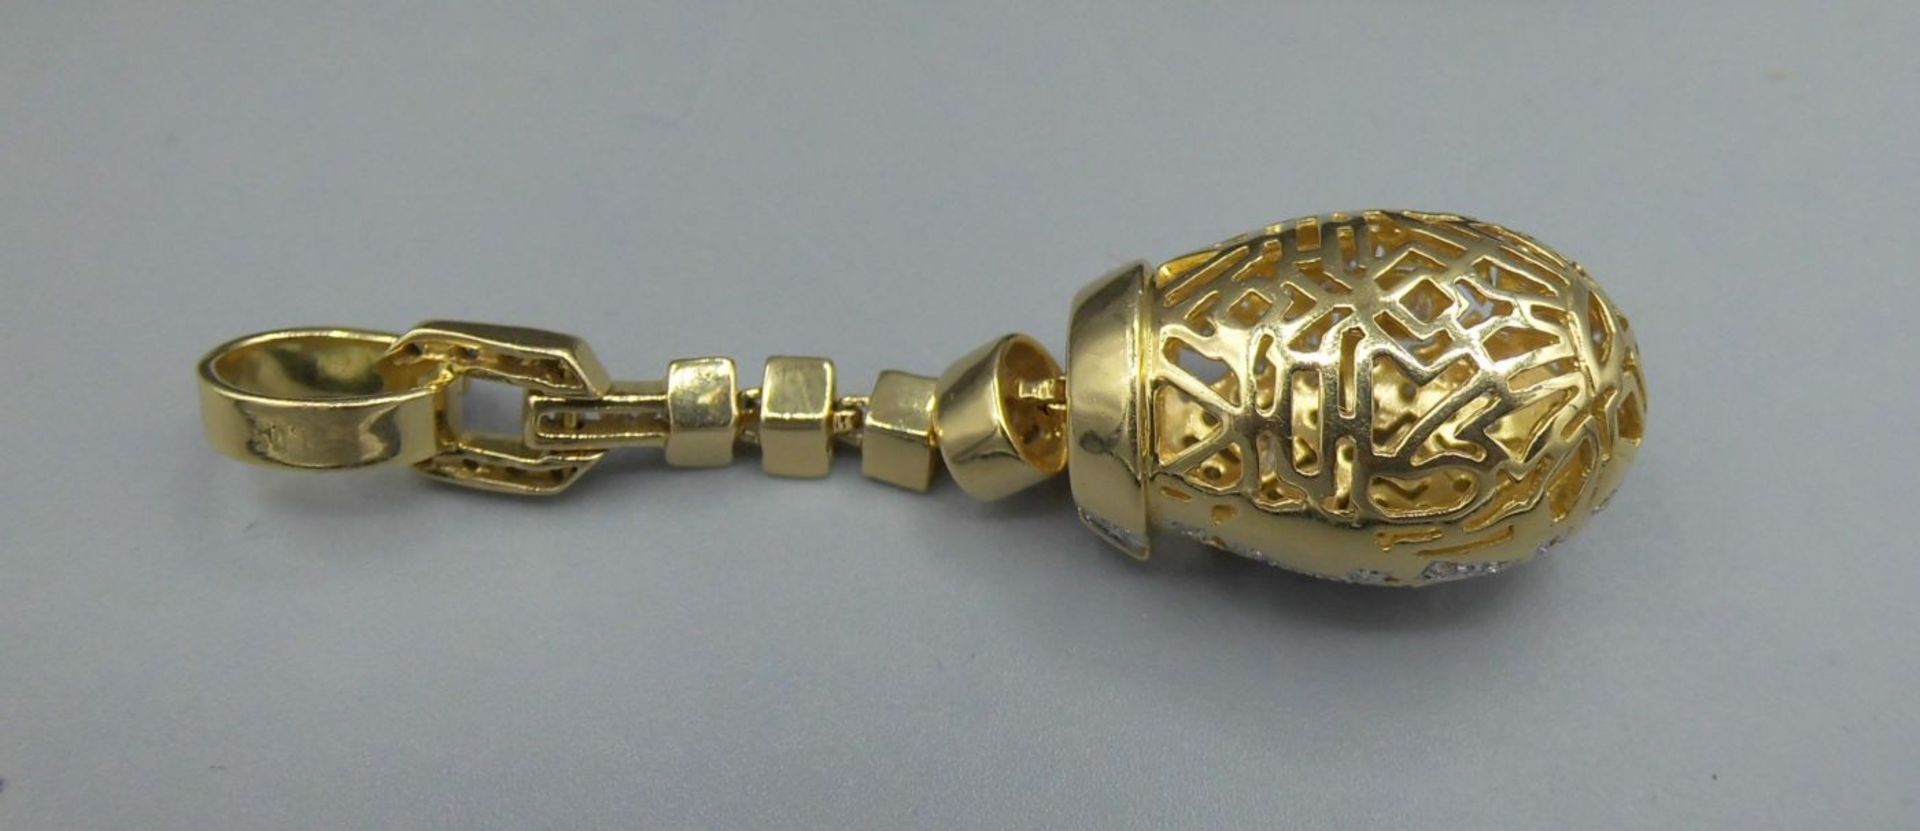 EXKLUSIVER ANHÄNGER MIT BRILLANTBESATZ / pendant, in 750er Gelbgoldfassung (12 g), komplett - Bild 3 aus 4